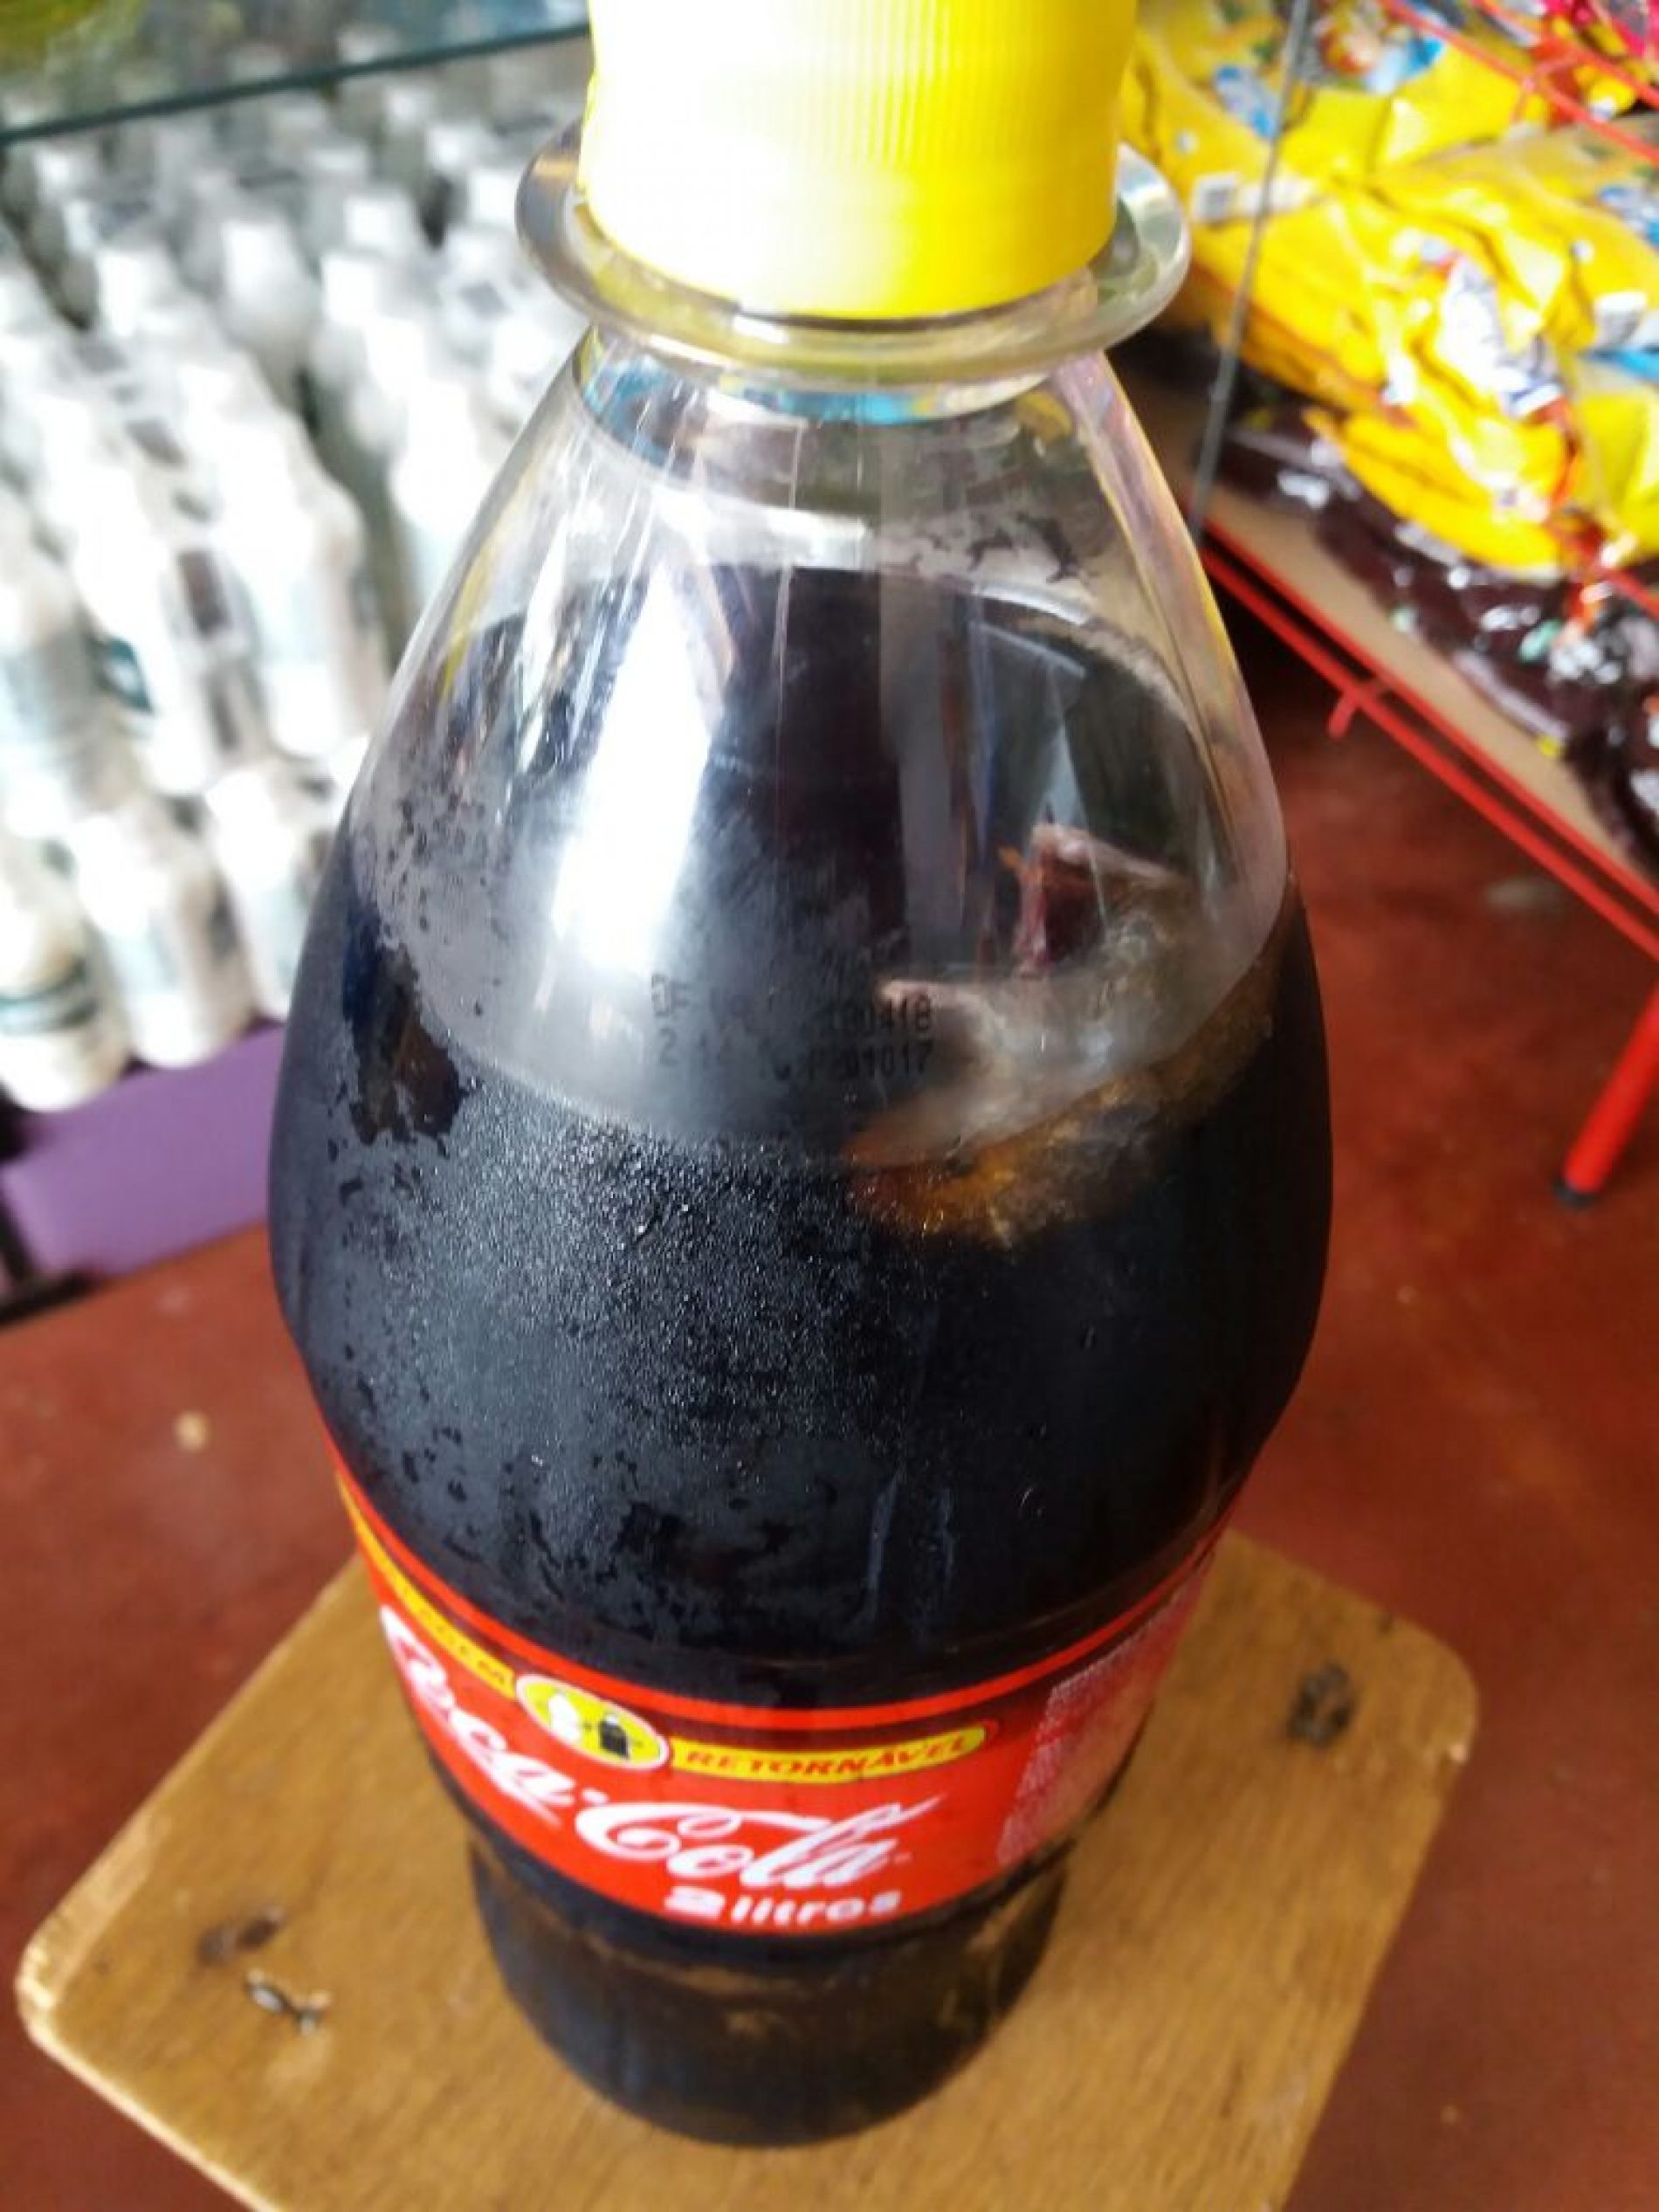 VERDADE OU MENTIRA?: Rato é encontrado dentro de garrafa de Coca-Cola retornável  com Validade: 18/04/18